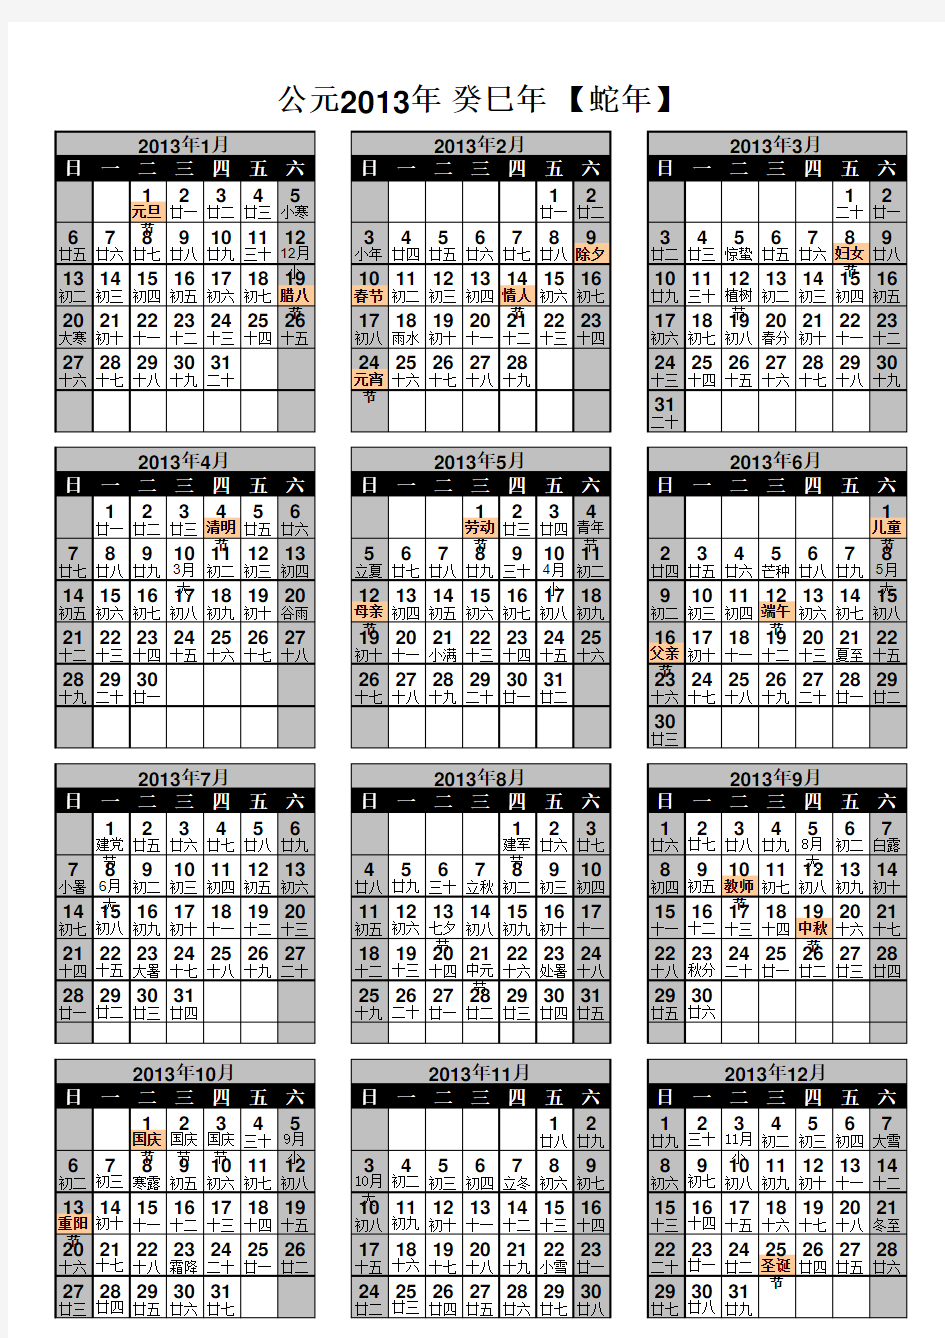 2013年日历_单张A4打印版年历(全年在一张A4上)